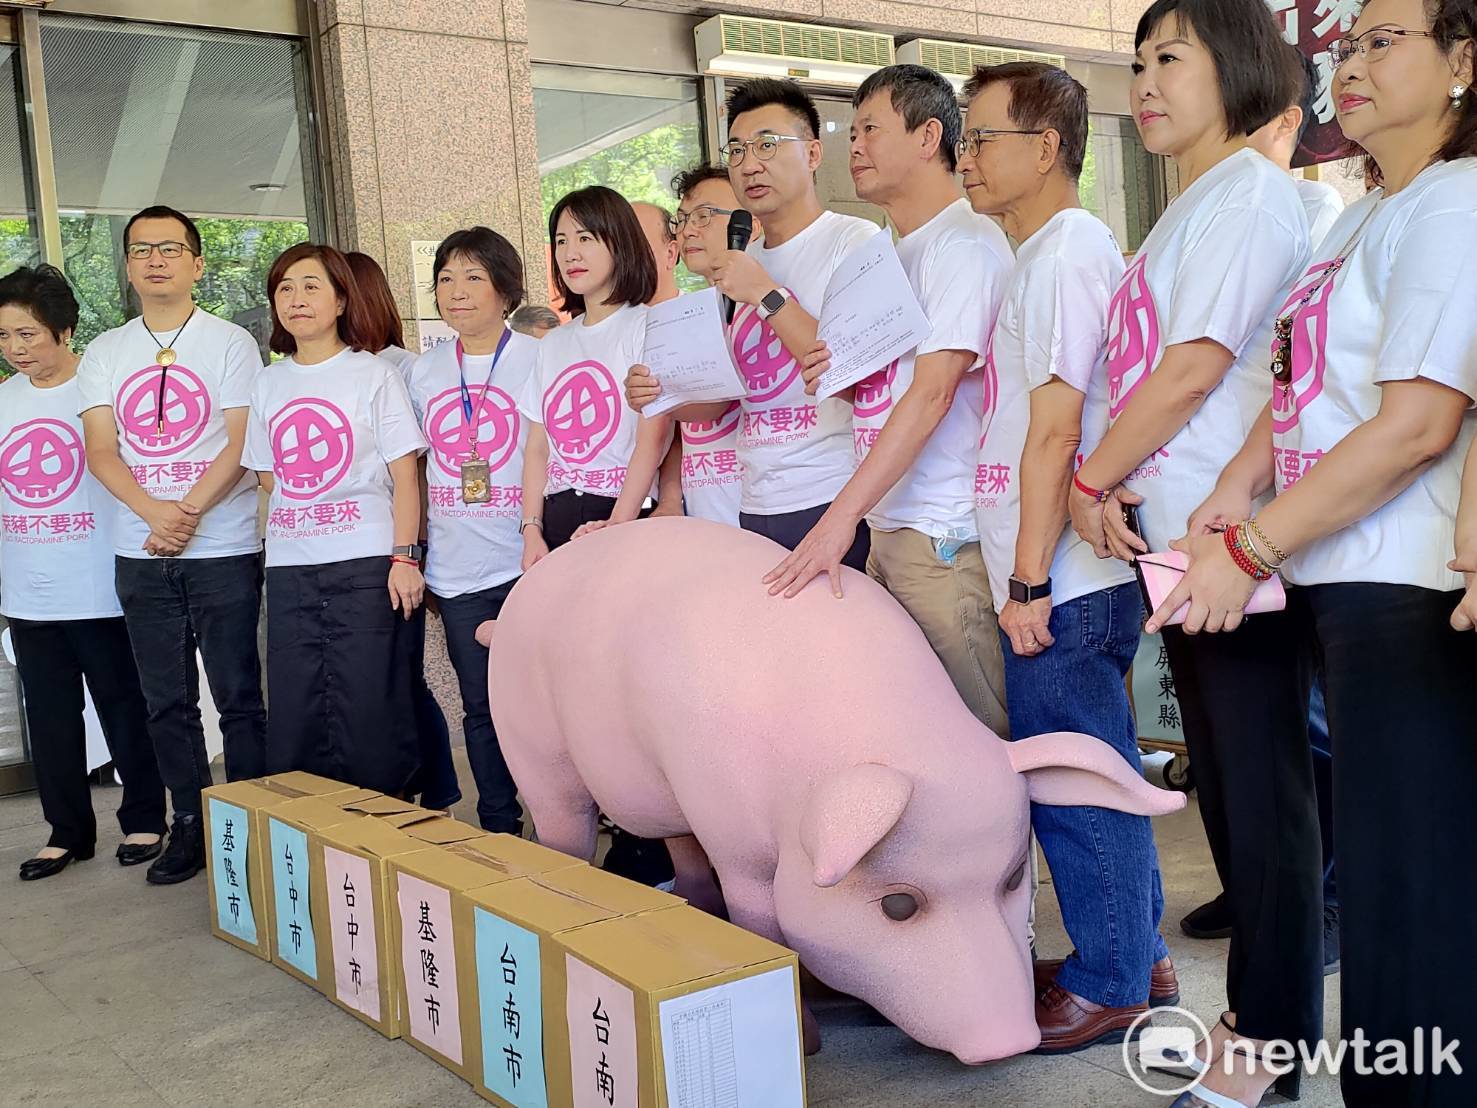 美國五大台灣會館評萊豬 反對科學議題政治化